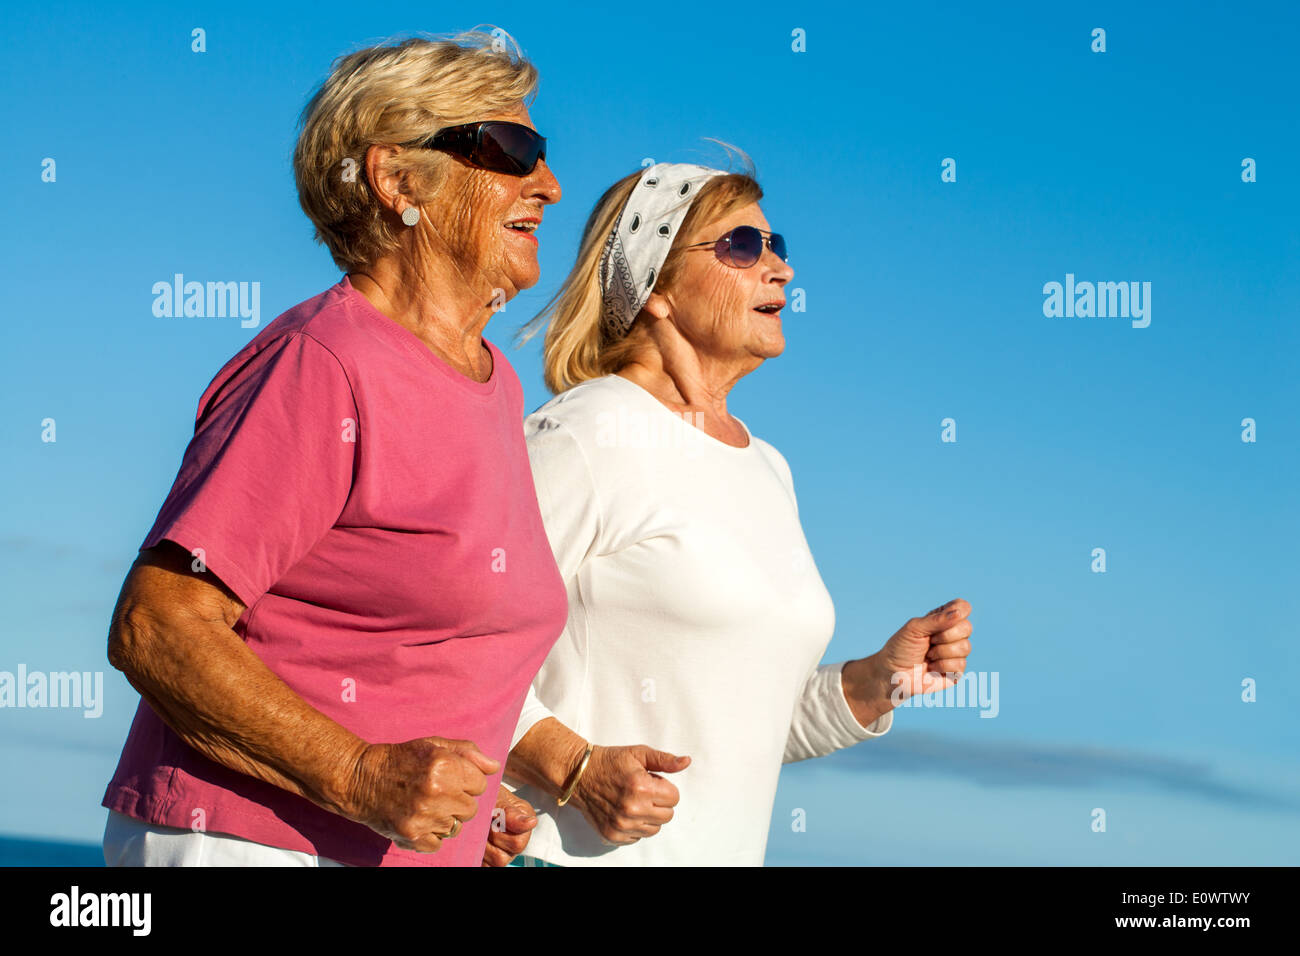 Porträt von zwei ältere Frauen, die Joggen im freien hautnah. Stockfoto